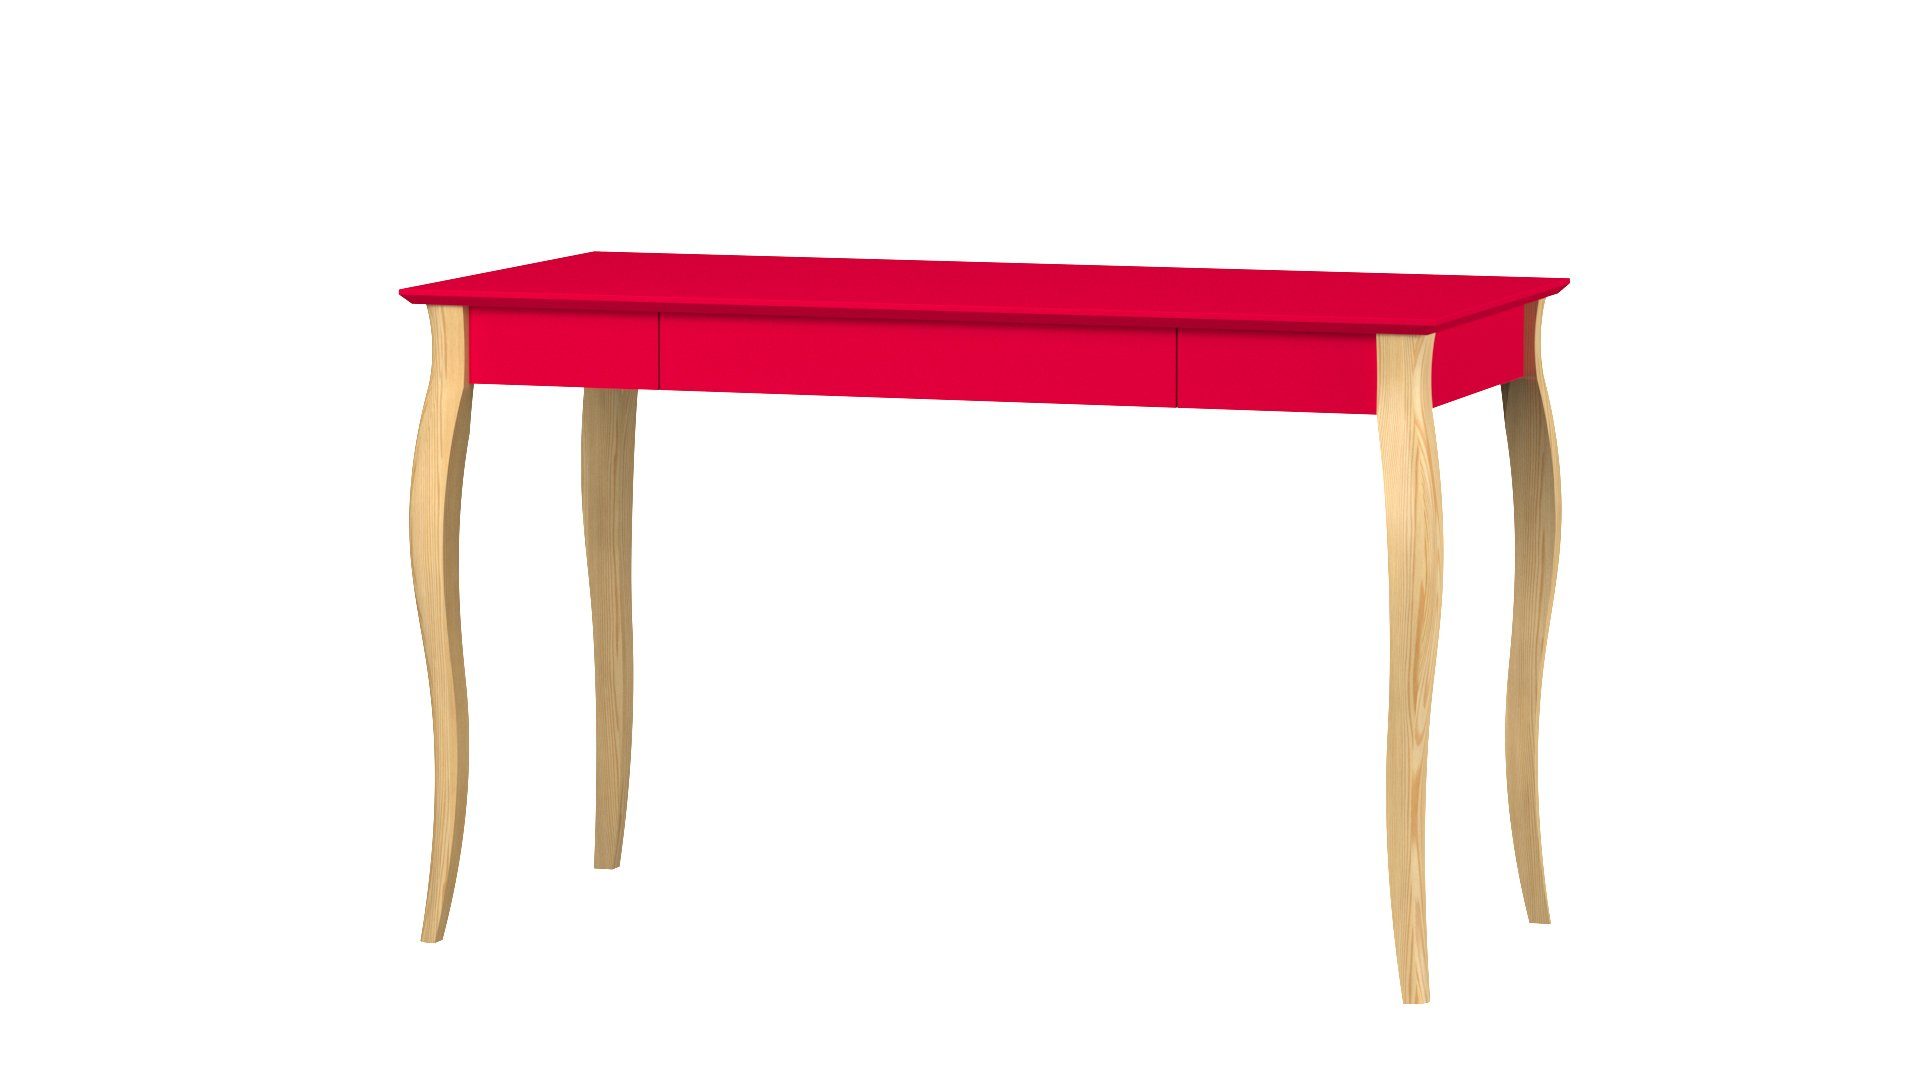 Siblo Schreibtisch Kinderschreibtisch Maila mit Schublade - Moderner Schreibtisch - minimalistisches Design - Kinderzimmer - Jugendzimmer - MDF-Platte - Buchenholz (Kinderschreibtisch Maila mit Schublade) Rot